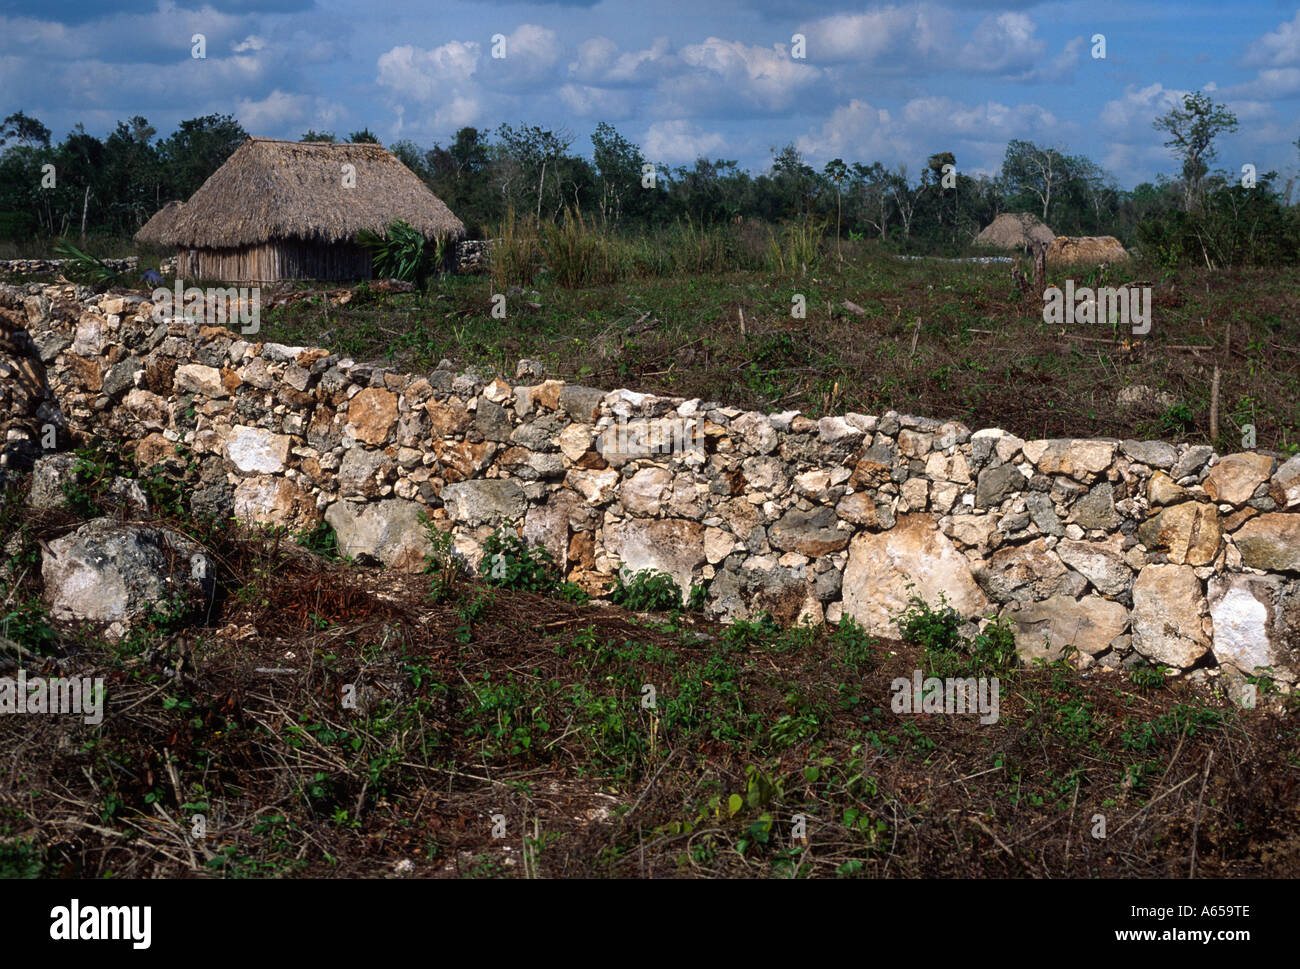 Ferme, maison maya, mur en pierre et terrain, péninsule du Yucatan, Quintana Roo, Mexique Banque D'Images